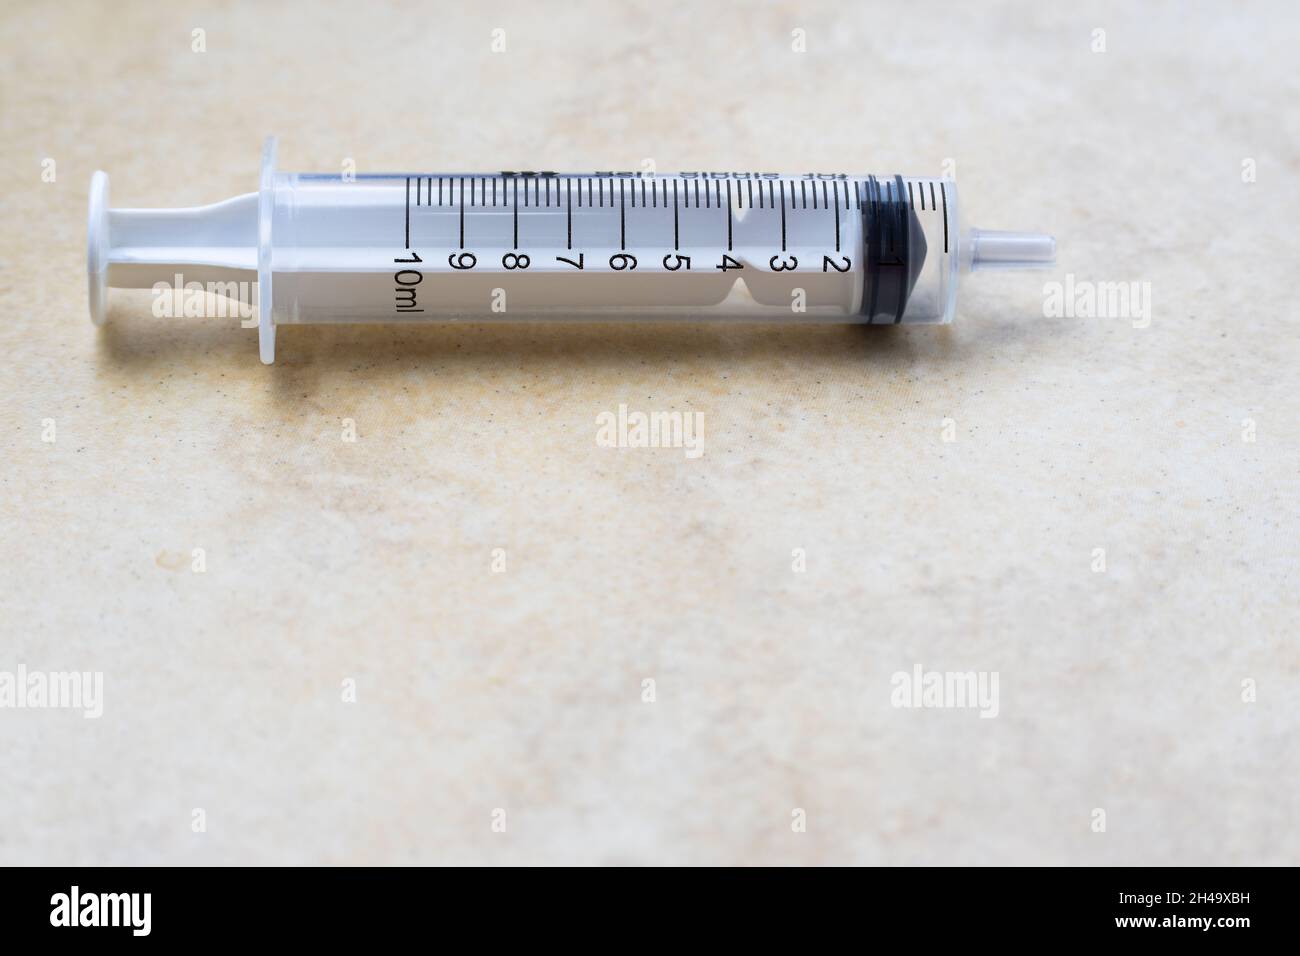 10ml medicinal syringe without needle Stock Photo